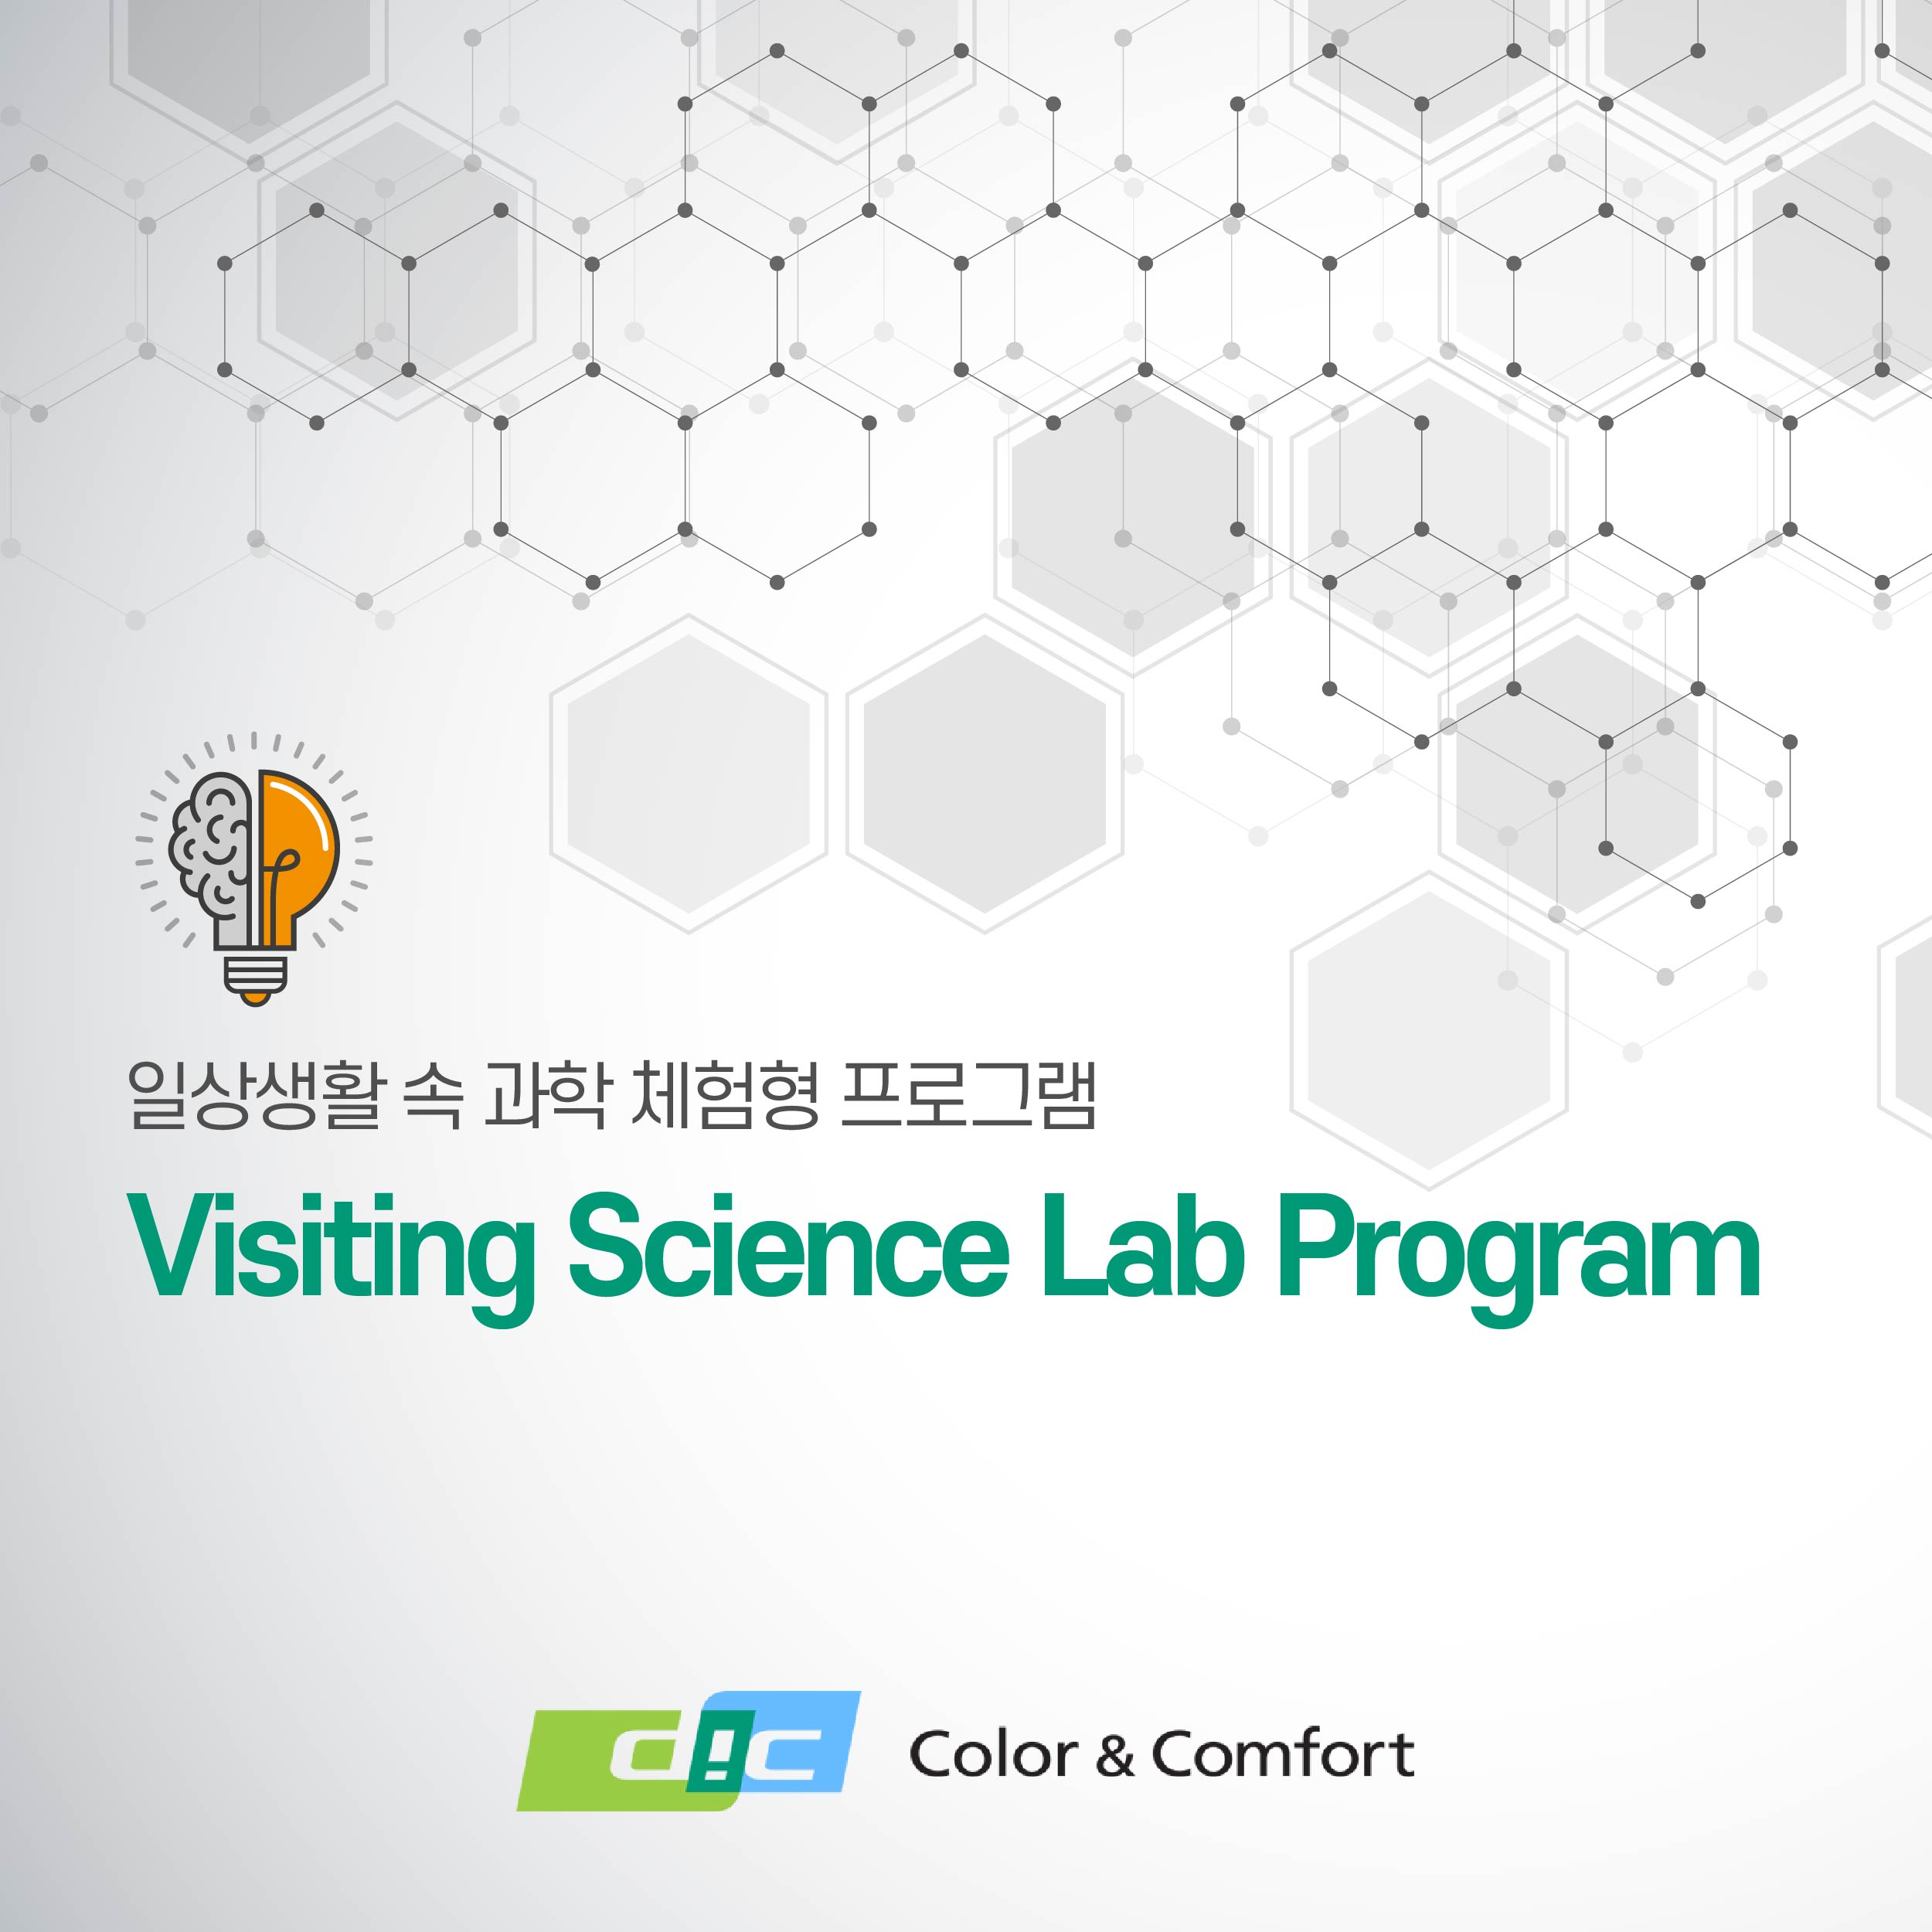 일상생활 속 과학 체험형 사회공헌 프로그램 visiting science lab program